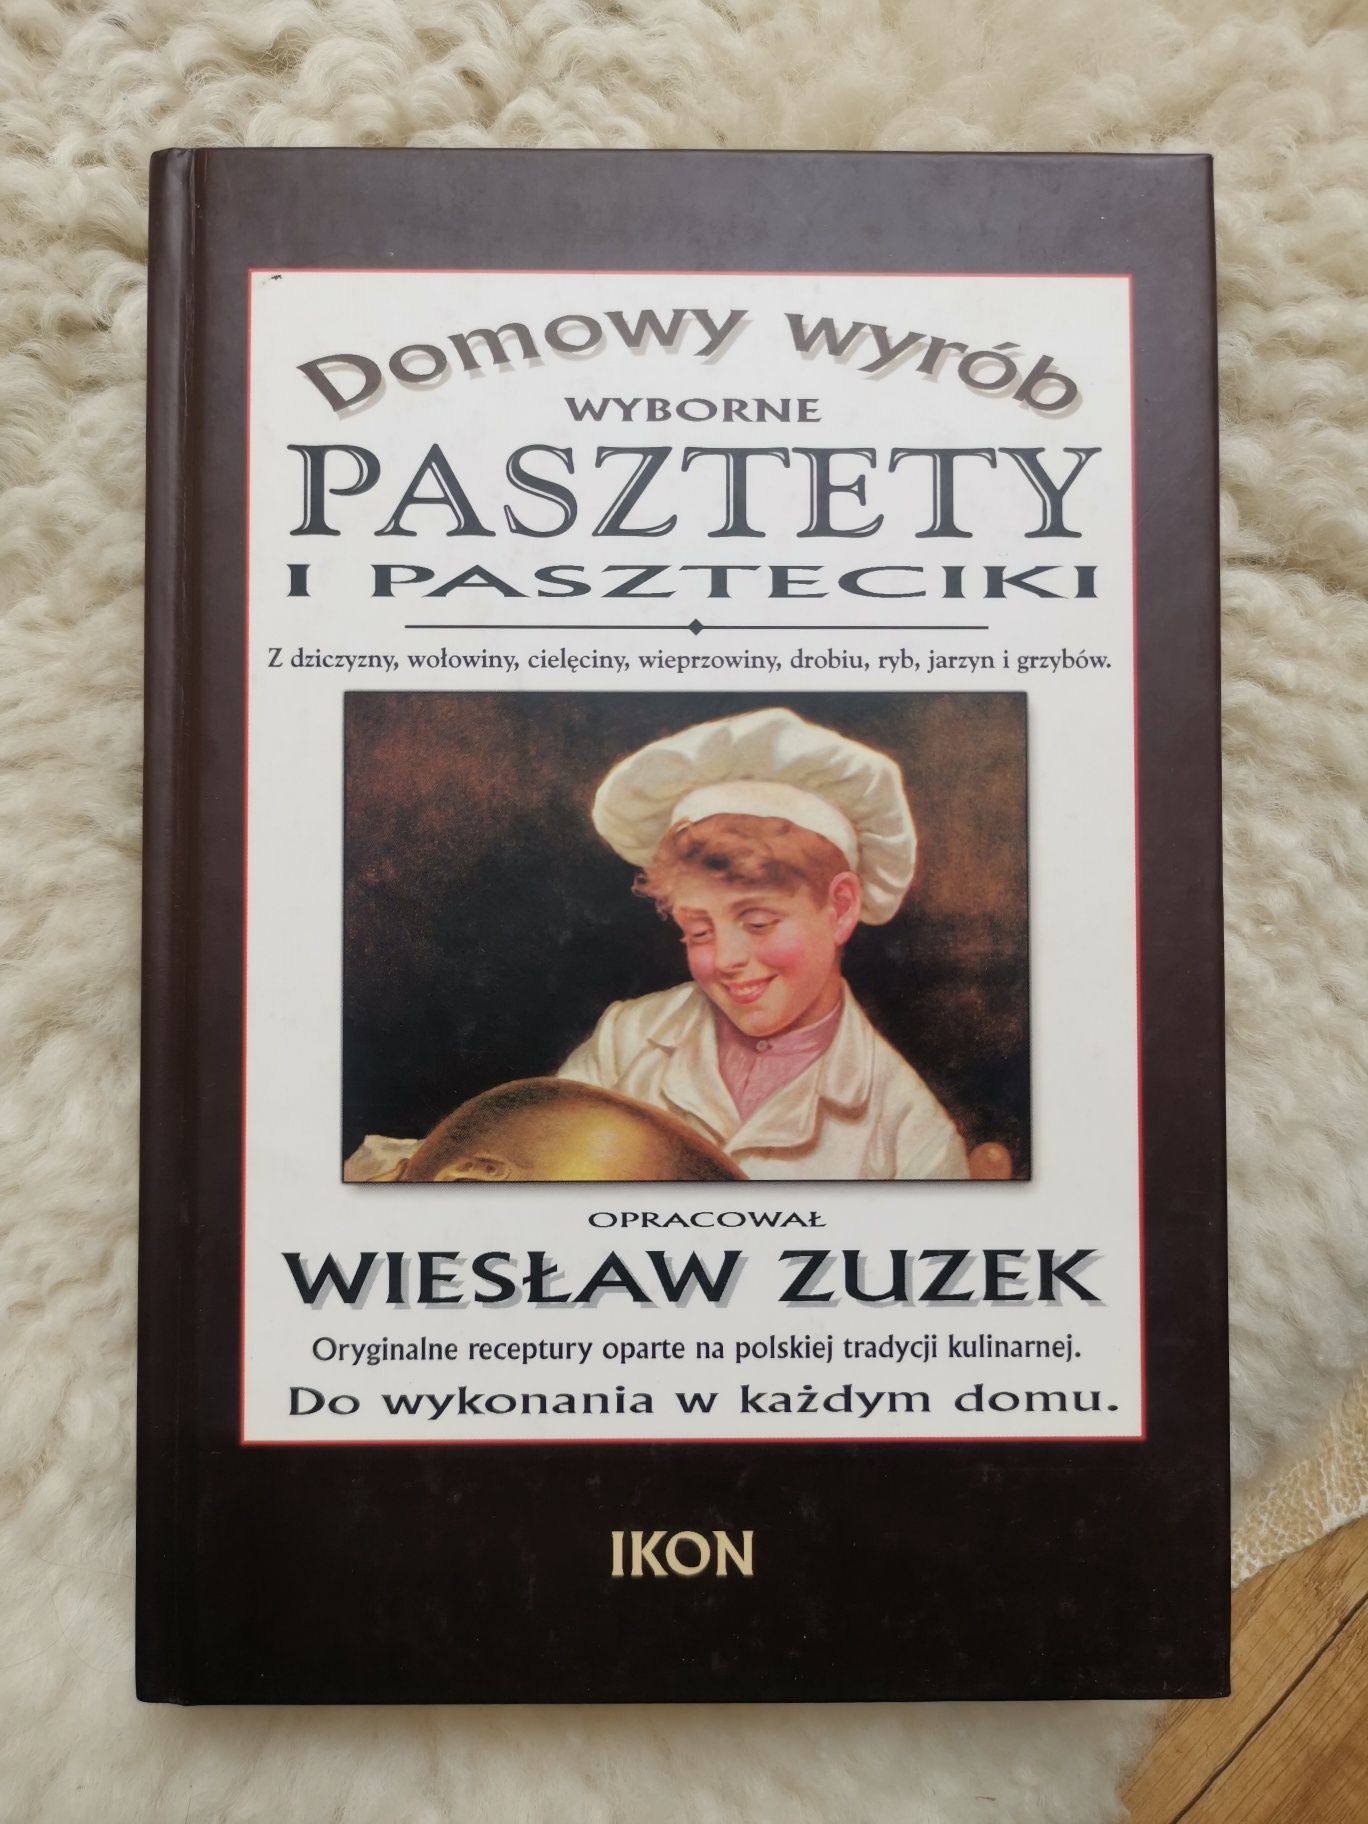 Książka PASZTETY I PASZTECIKI. Polska tradycja kulinarna. Wiesław Zuze